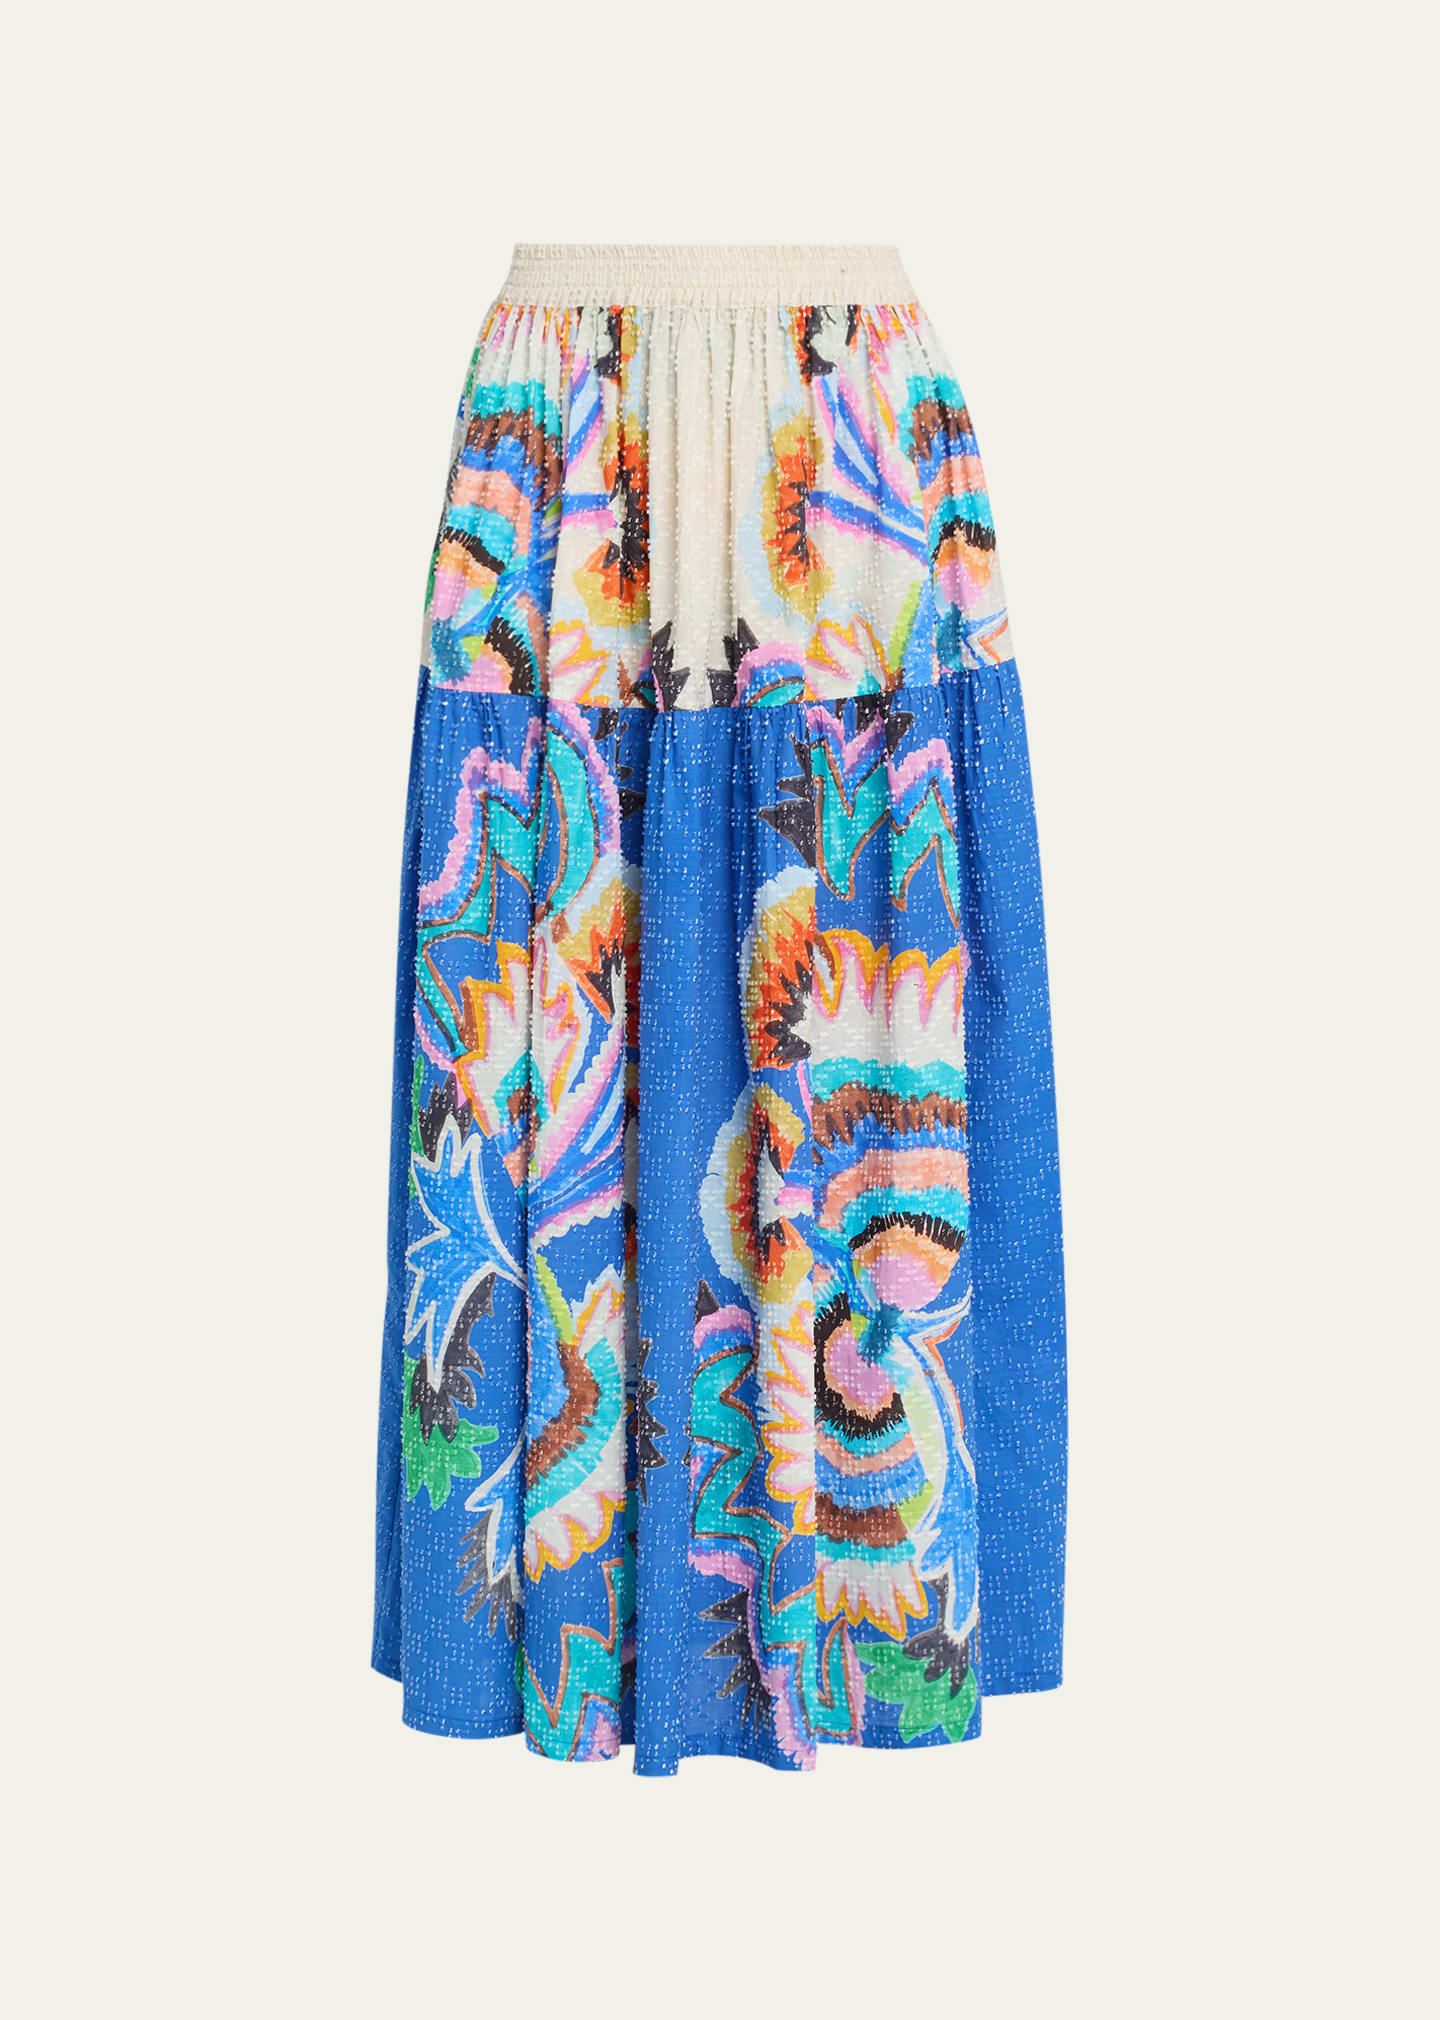 Rianna + Nina Minu Abstract Pleated Maxi Skirt In Zoi Blue